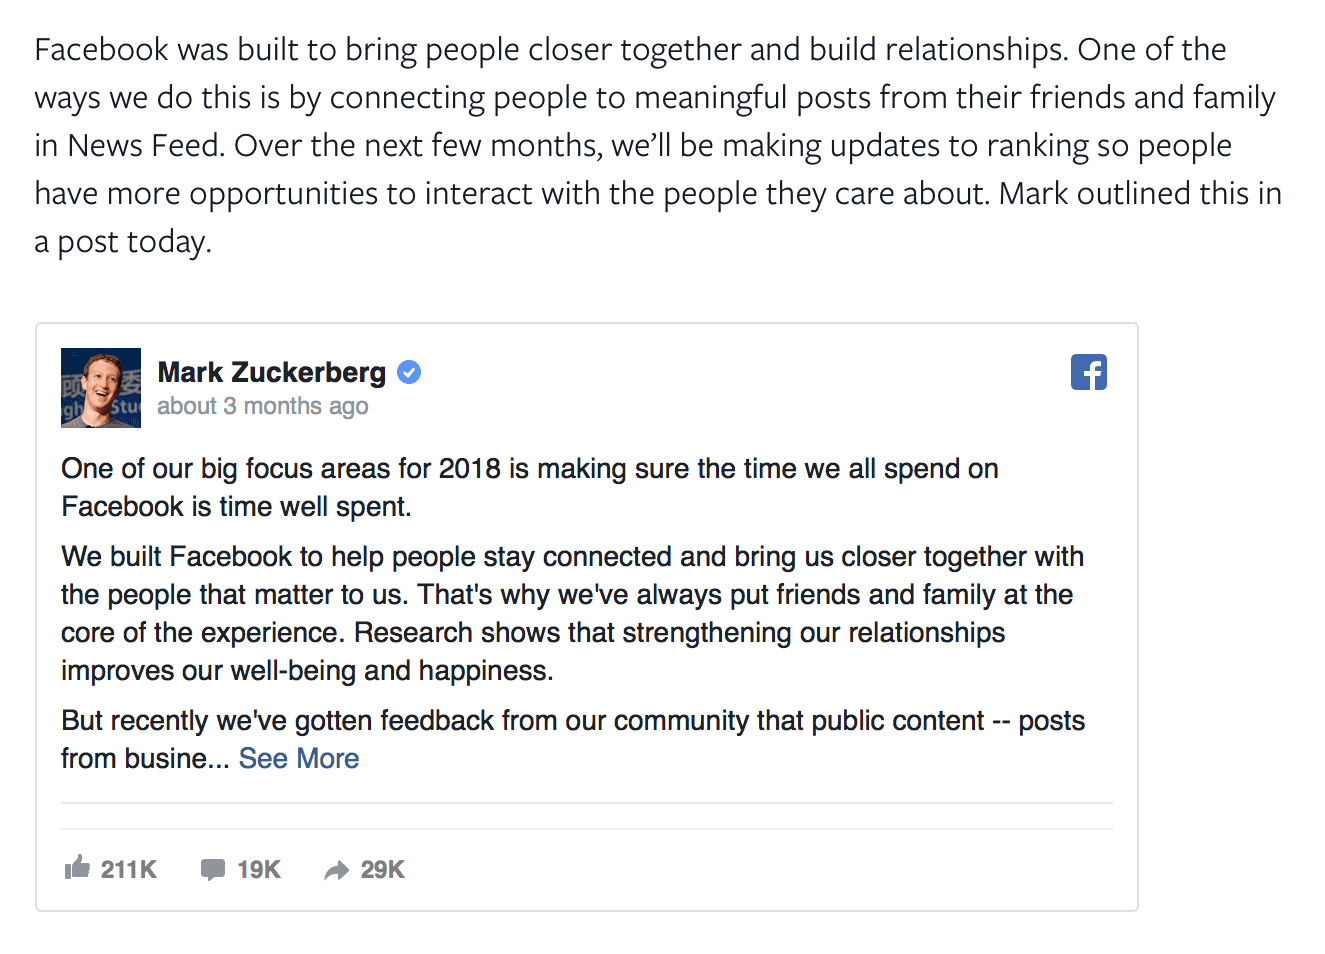 Ils veulent aider les utilisateurs de Facebook à avoir plus d'interactions significatives sur la plateforme en s'assurant qu'ils voient du contenu de la famille, des amis et du contenu de marque pertinent.